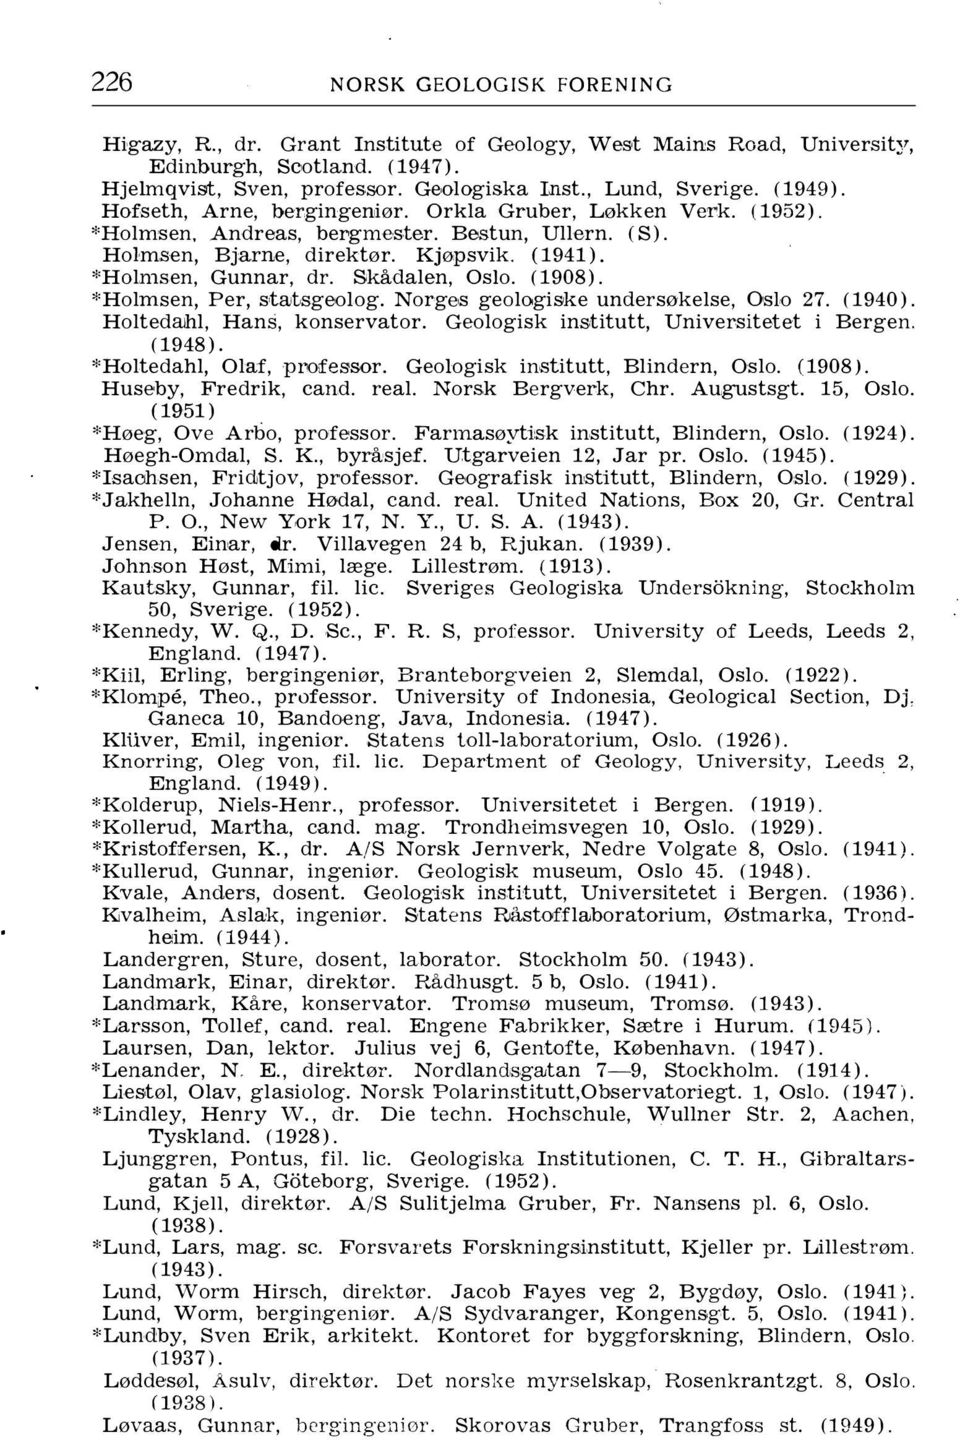 Skådalen, Oslo. (1908). *Holmsen, Per, strutsgeolog. Norges geologiske undersøkelse, OsLo 27. (1940). Holtedruhl, Hans, konservator. Geologisk institutt, Unive!'sitetet i Bergen. (1948).